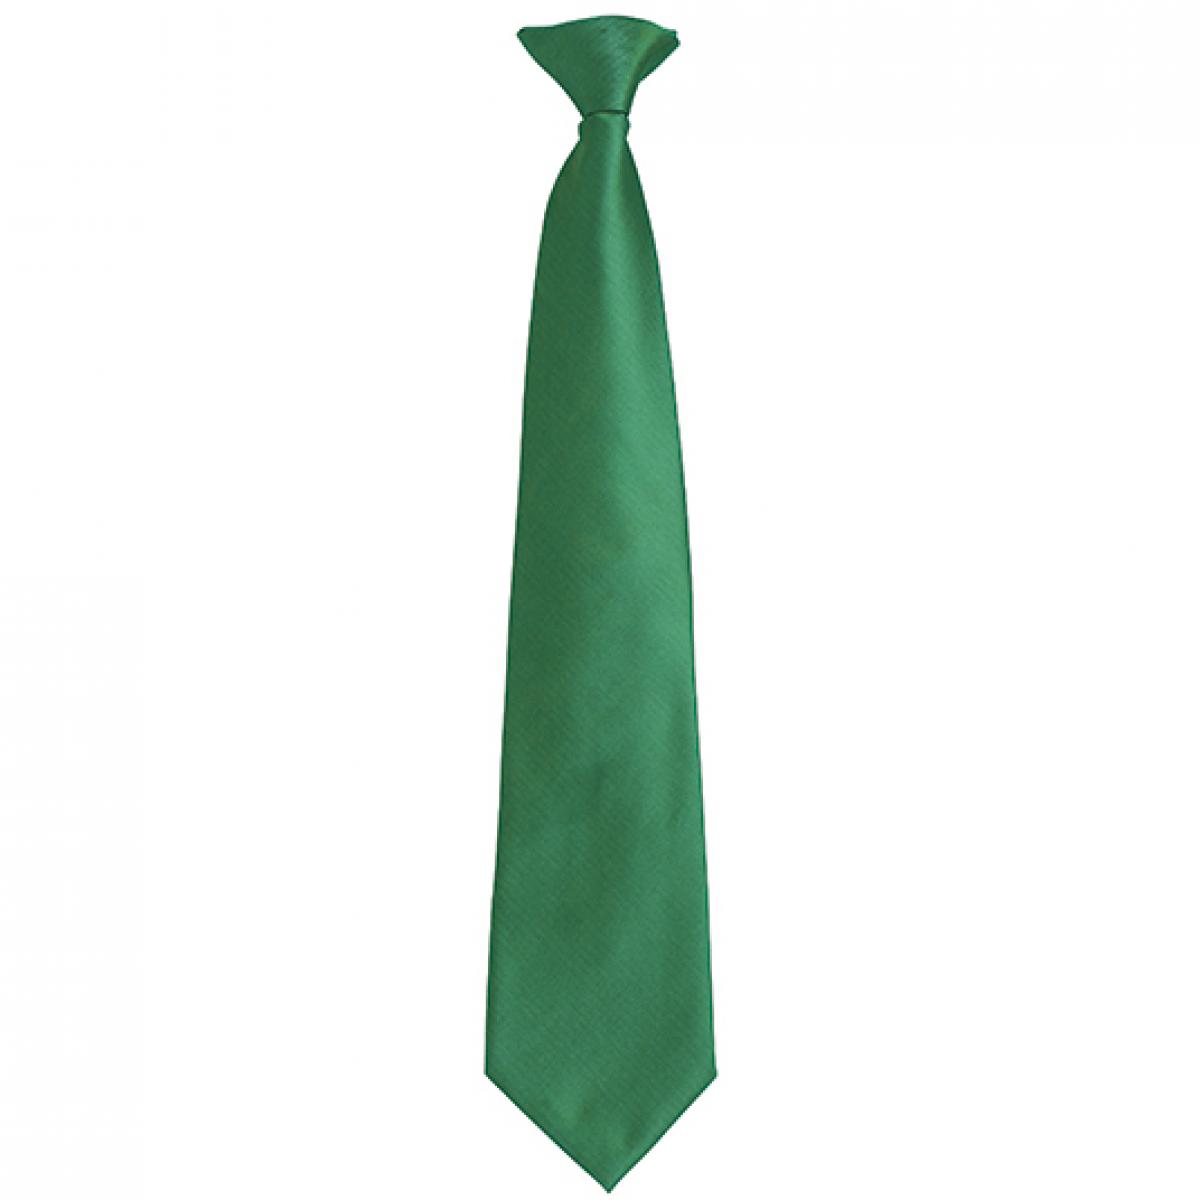 Hersteller: Premier Workwear Herstellernummer: PR785 Artikelbezeichnung: ´Colours´ Fashion Clip Tie Farbe: Emerald (ca. Pantone 7734C)